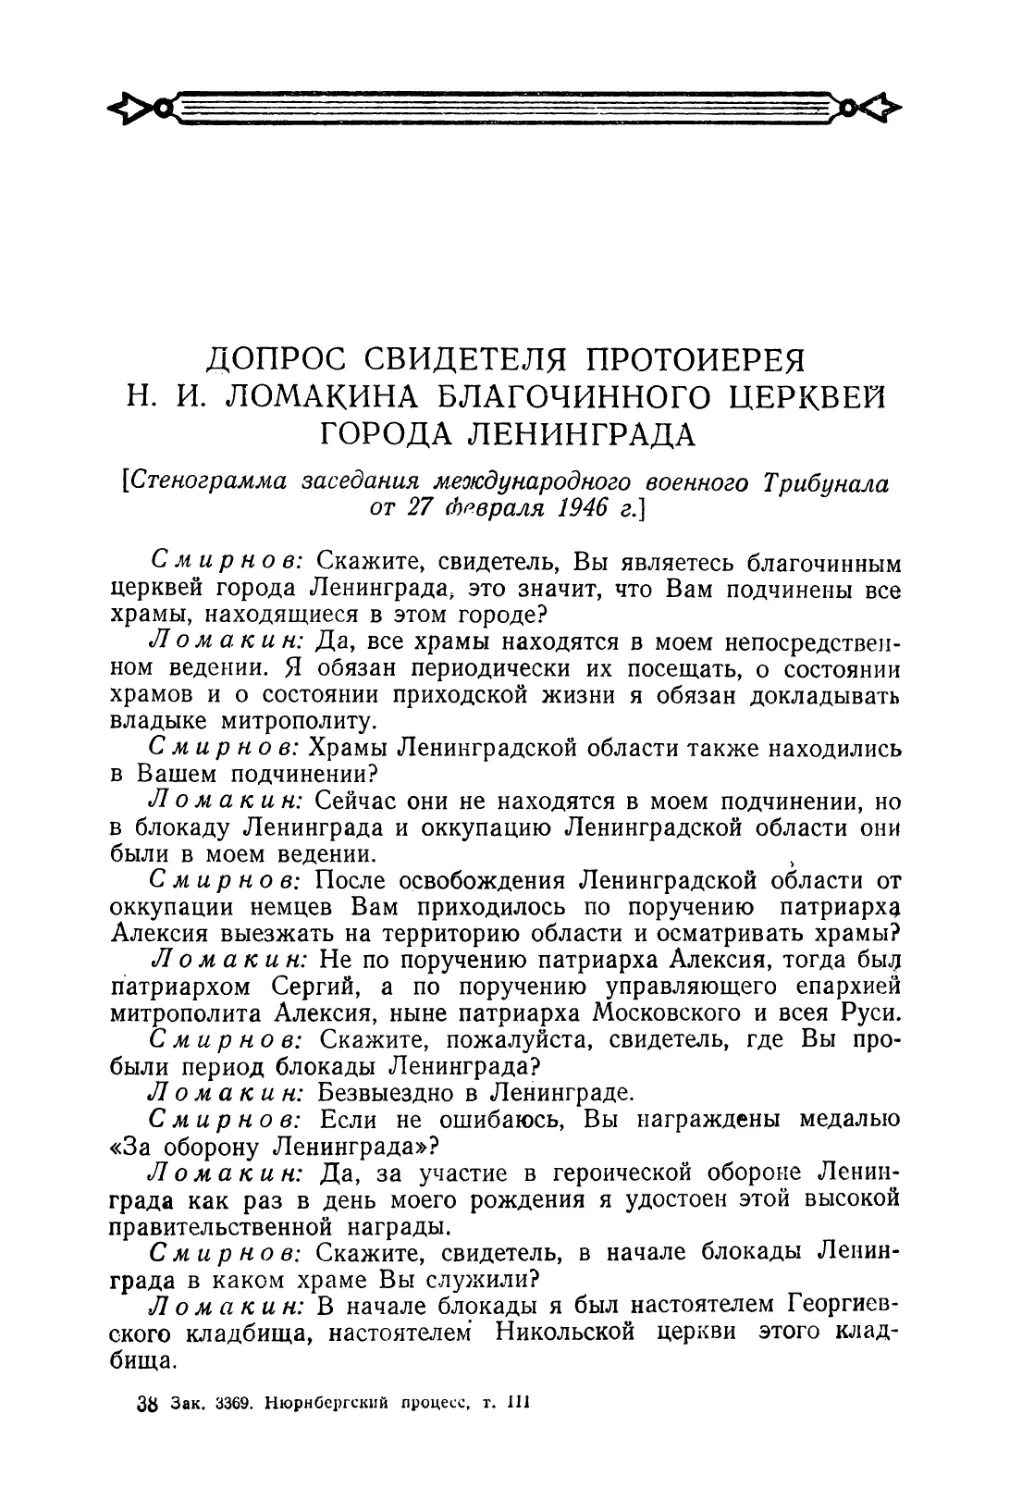 Допрос свидетеля протоиерея Н. И. Ломакина в заседании Трибунала 27 февраля 1946 г.